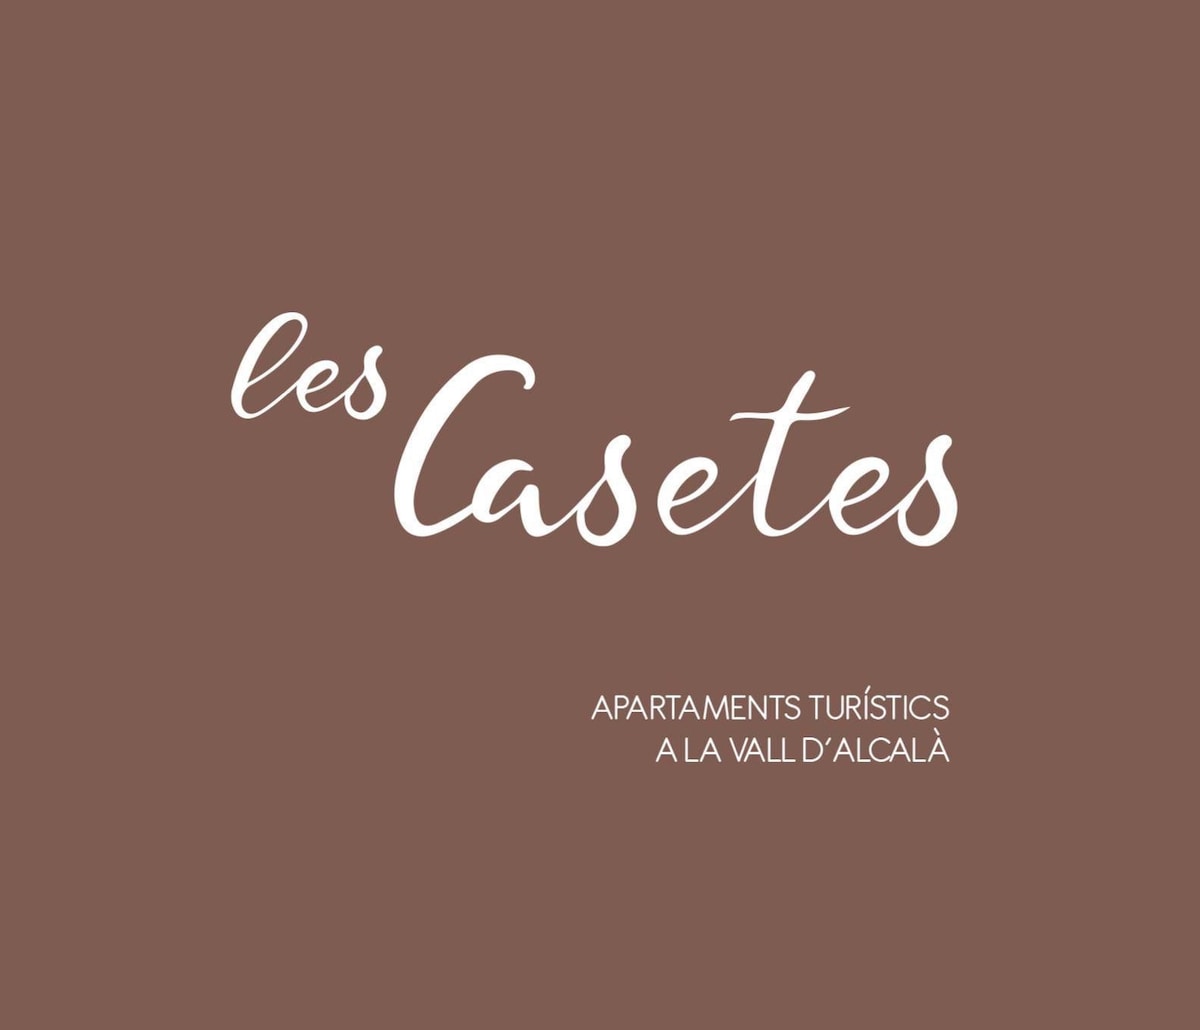 Les Casetes La Vall d 'Alcalà - Ap3